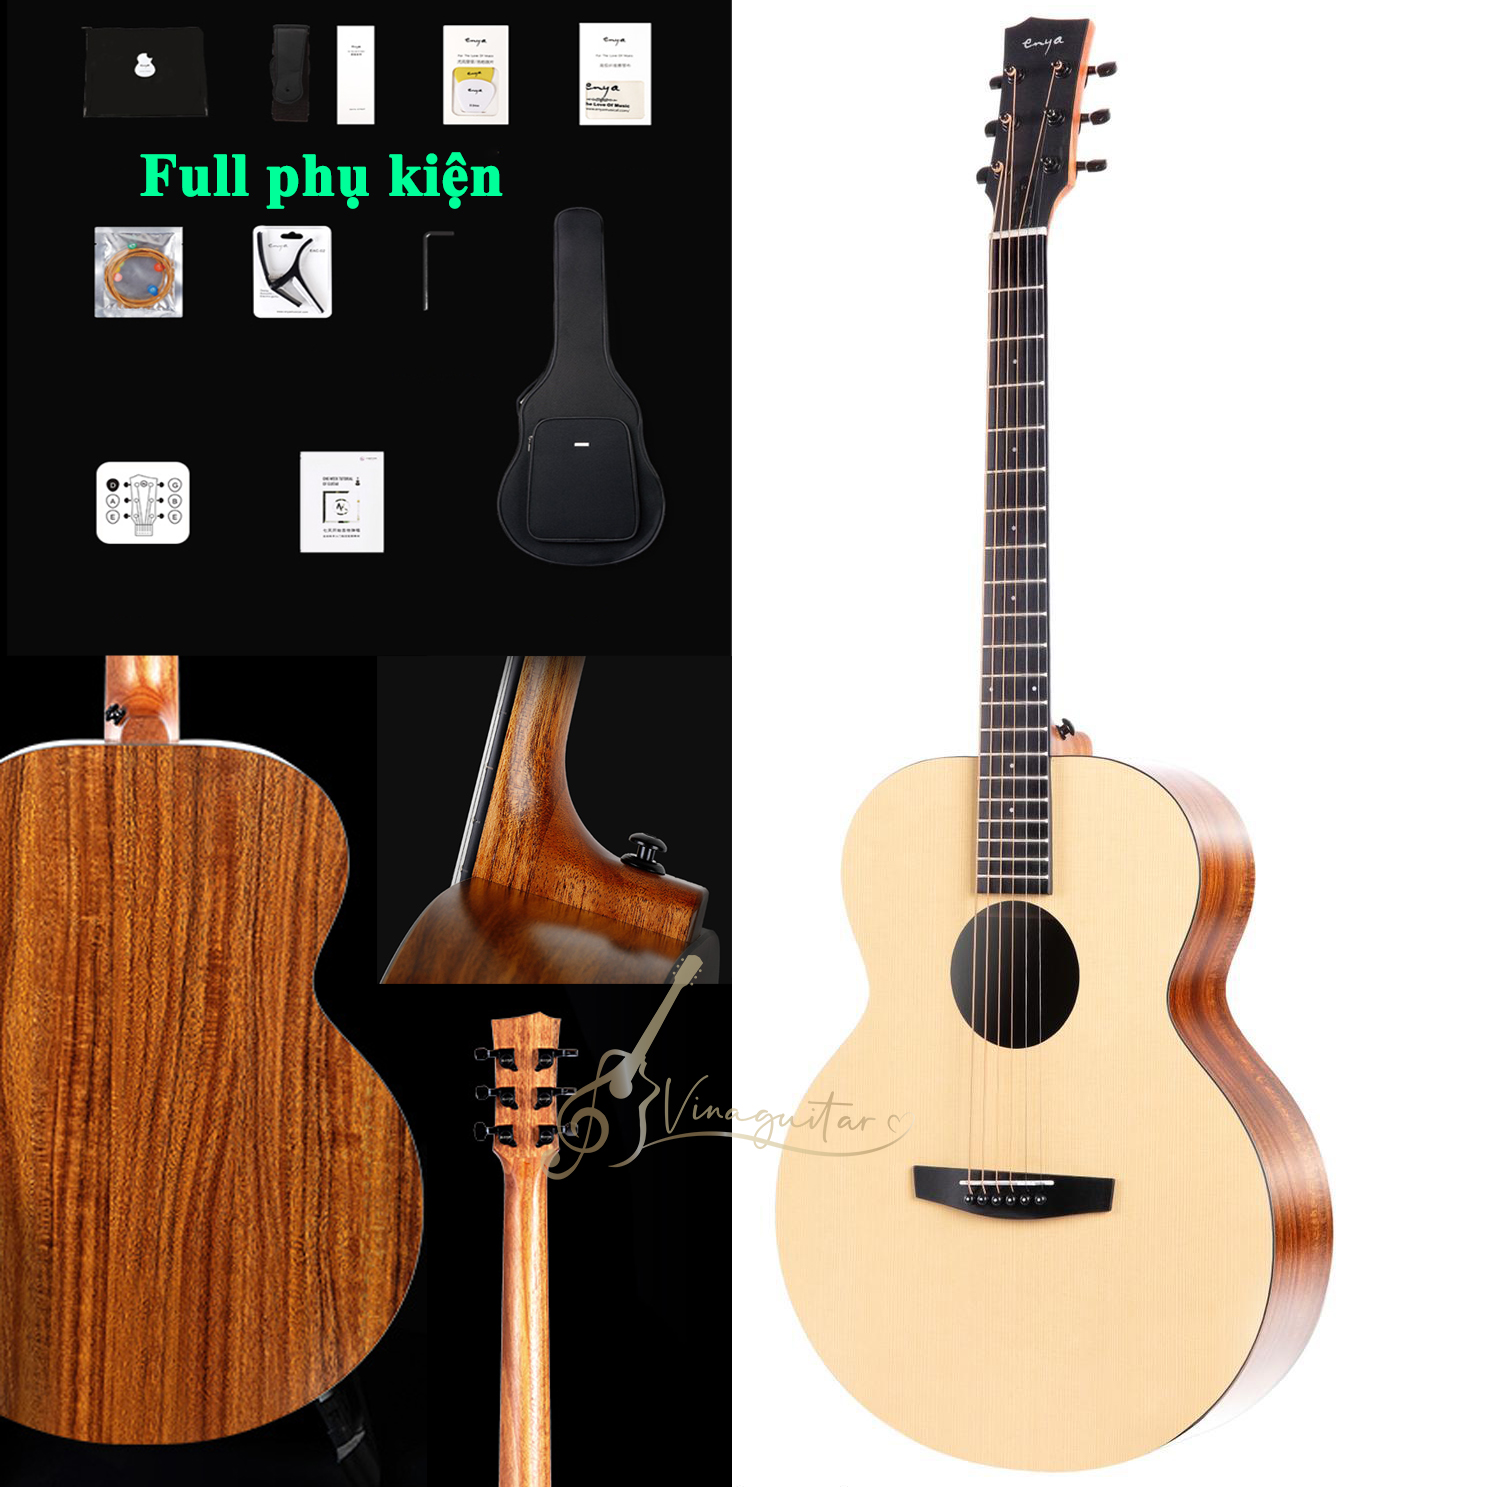 [ Có guitar 3/4 ] Đàn Guitar Acoustic ENYA X0 chính hãng kèm full phụ kiện - Vinaguitar phân phối và bảo hành